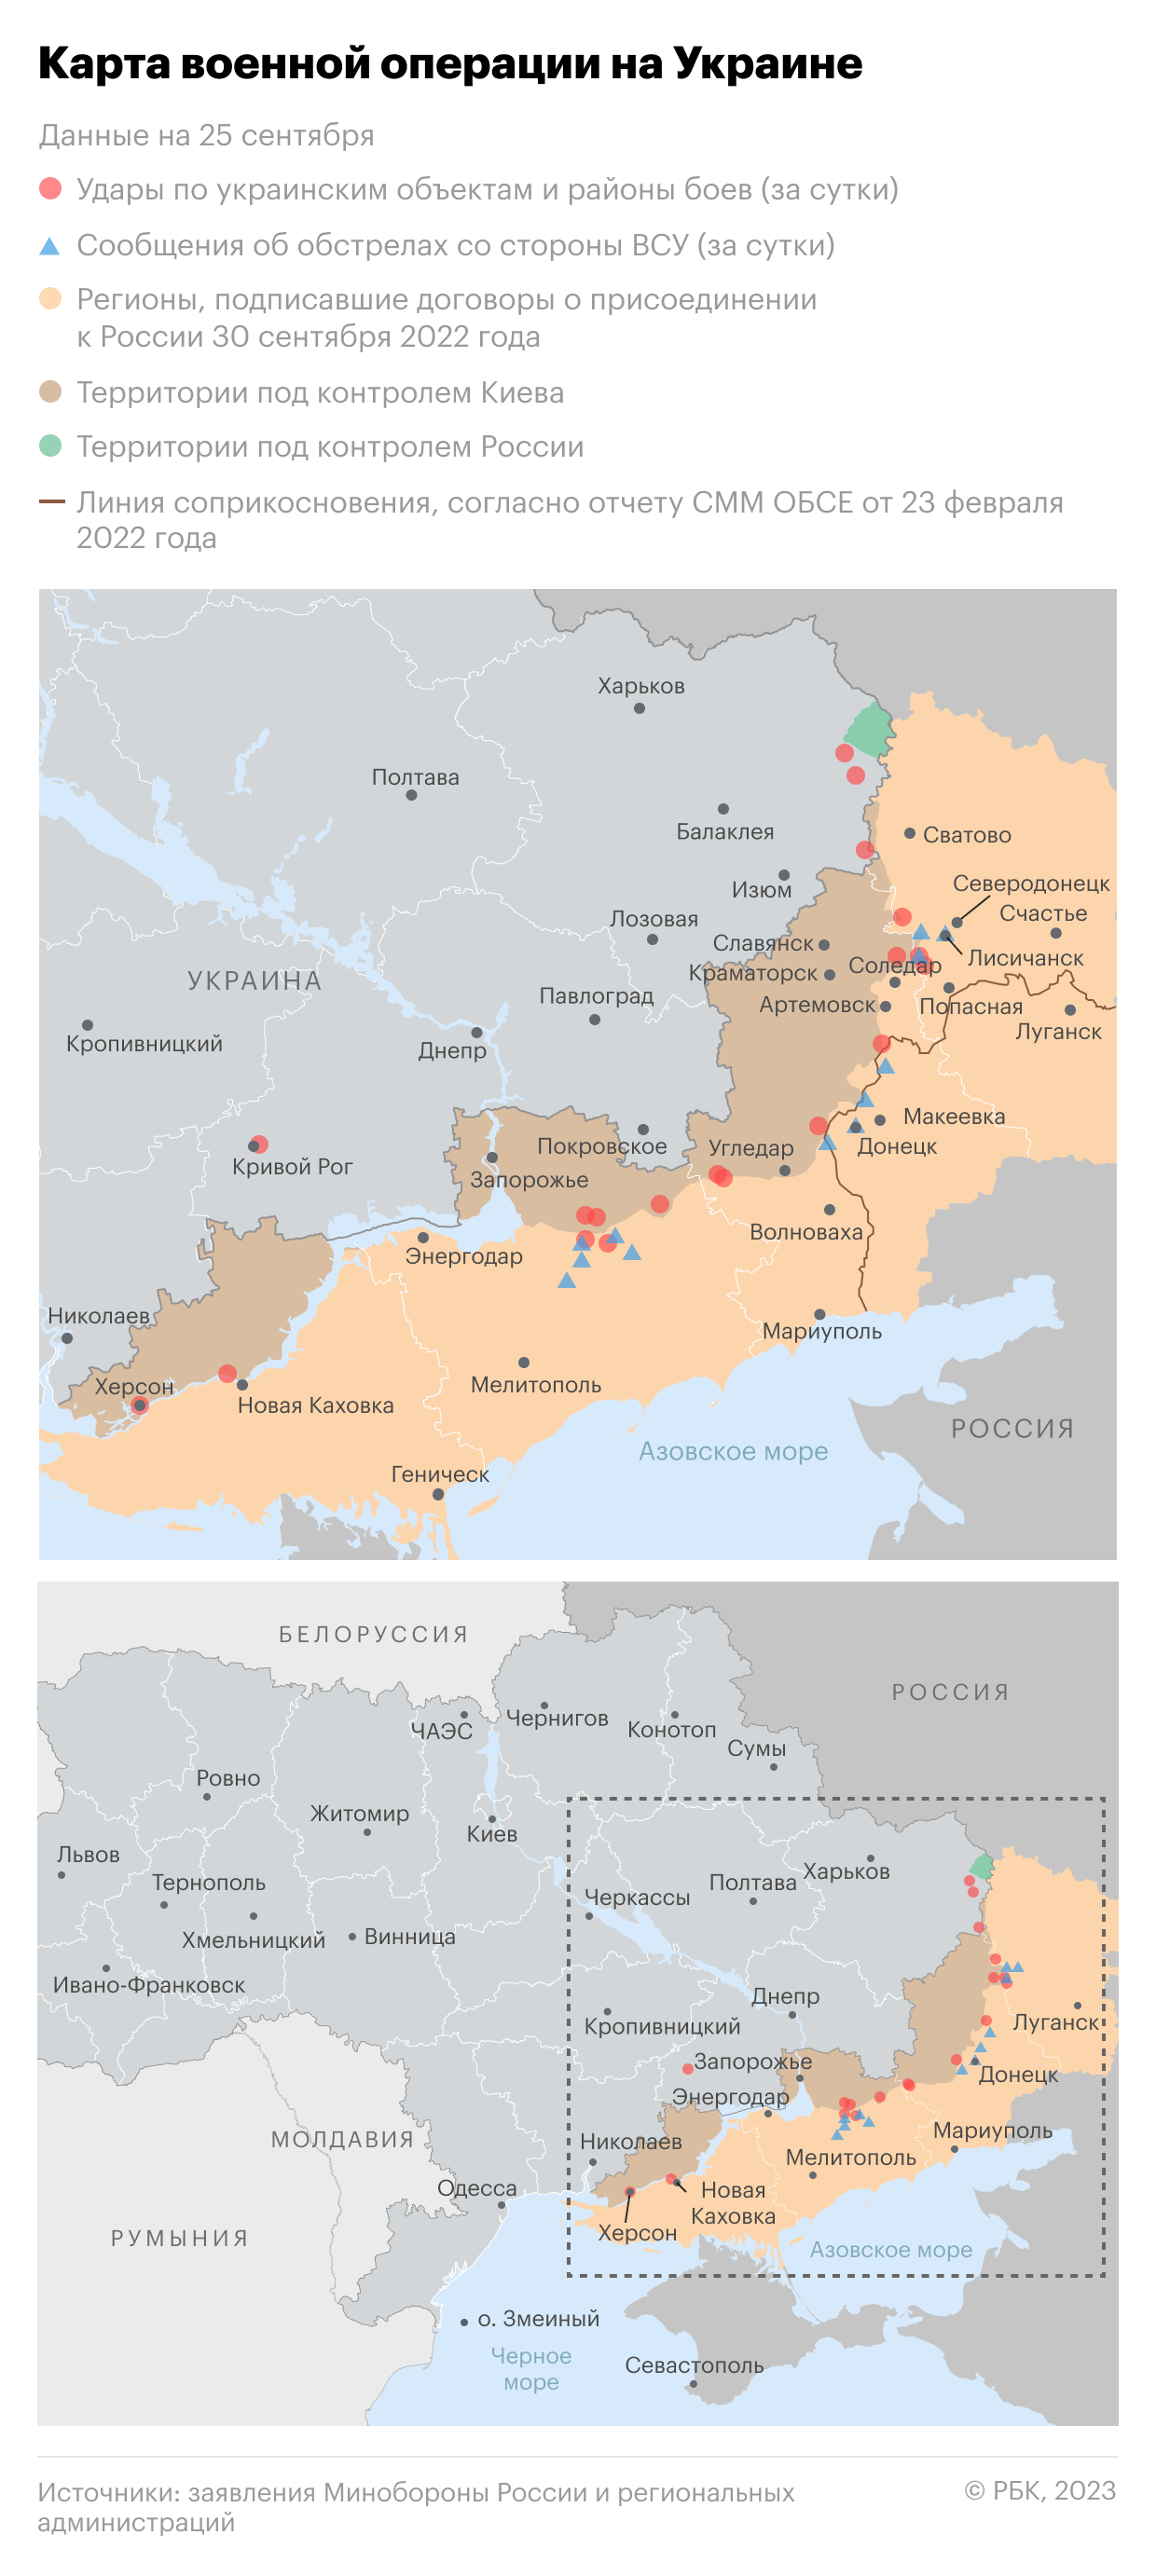 Военная операция на Украине. Карта на 25 сентября